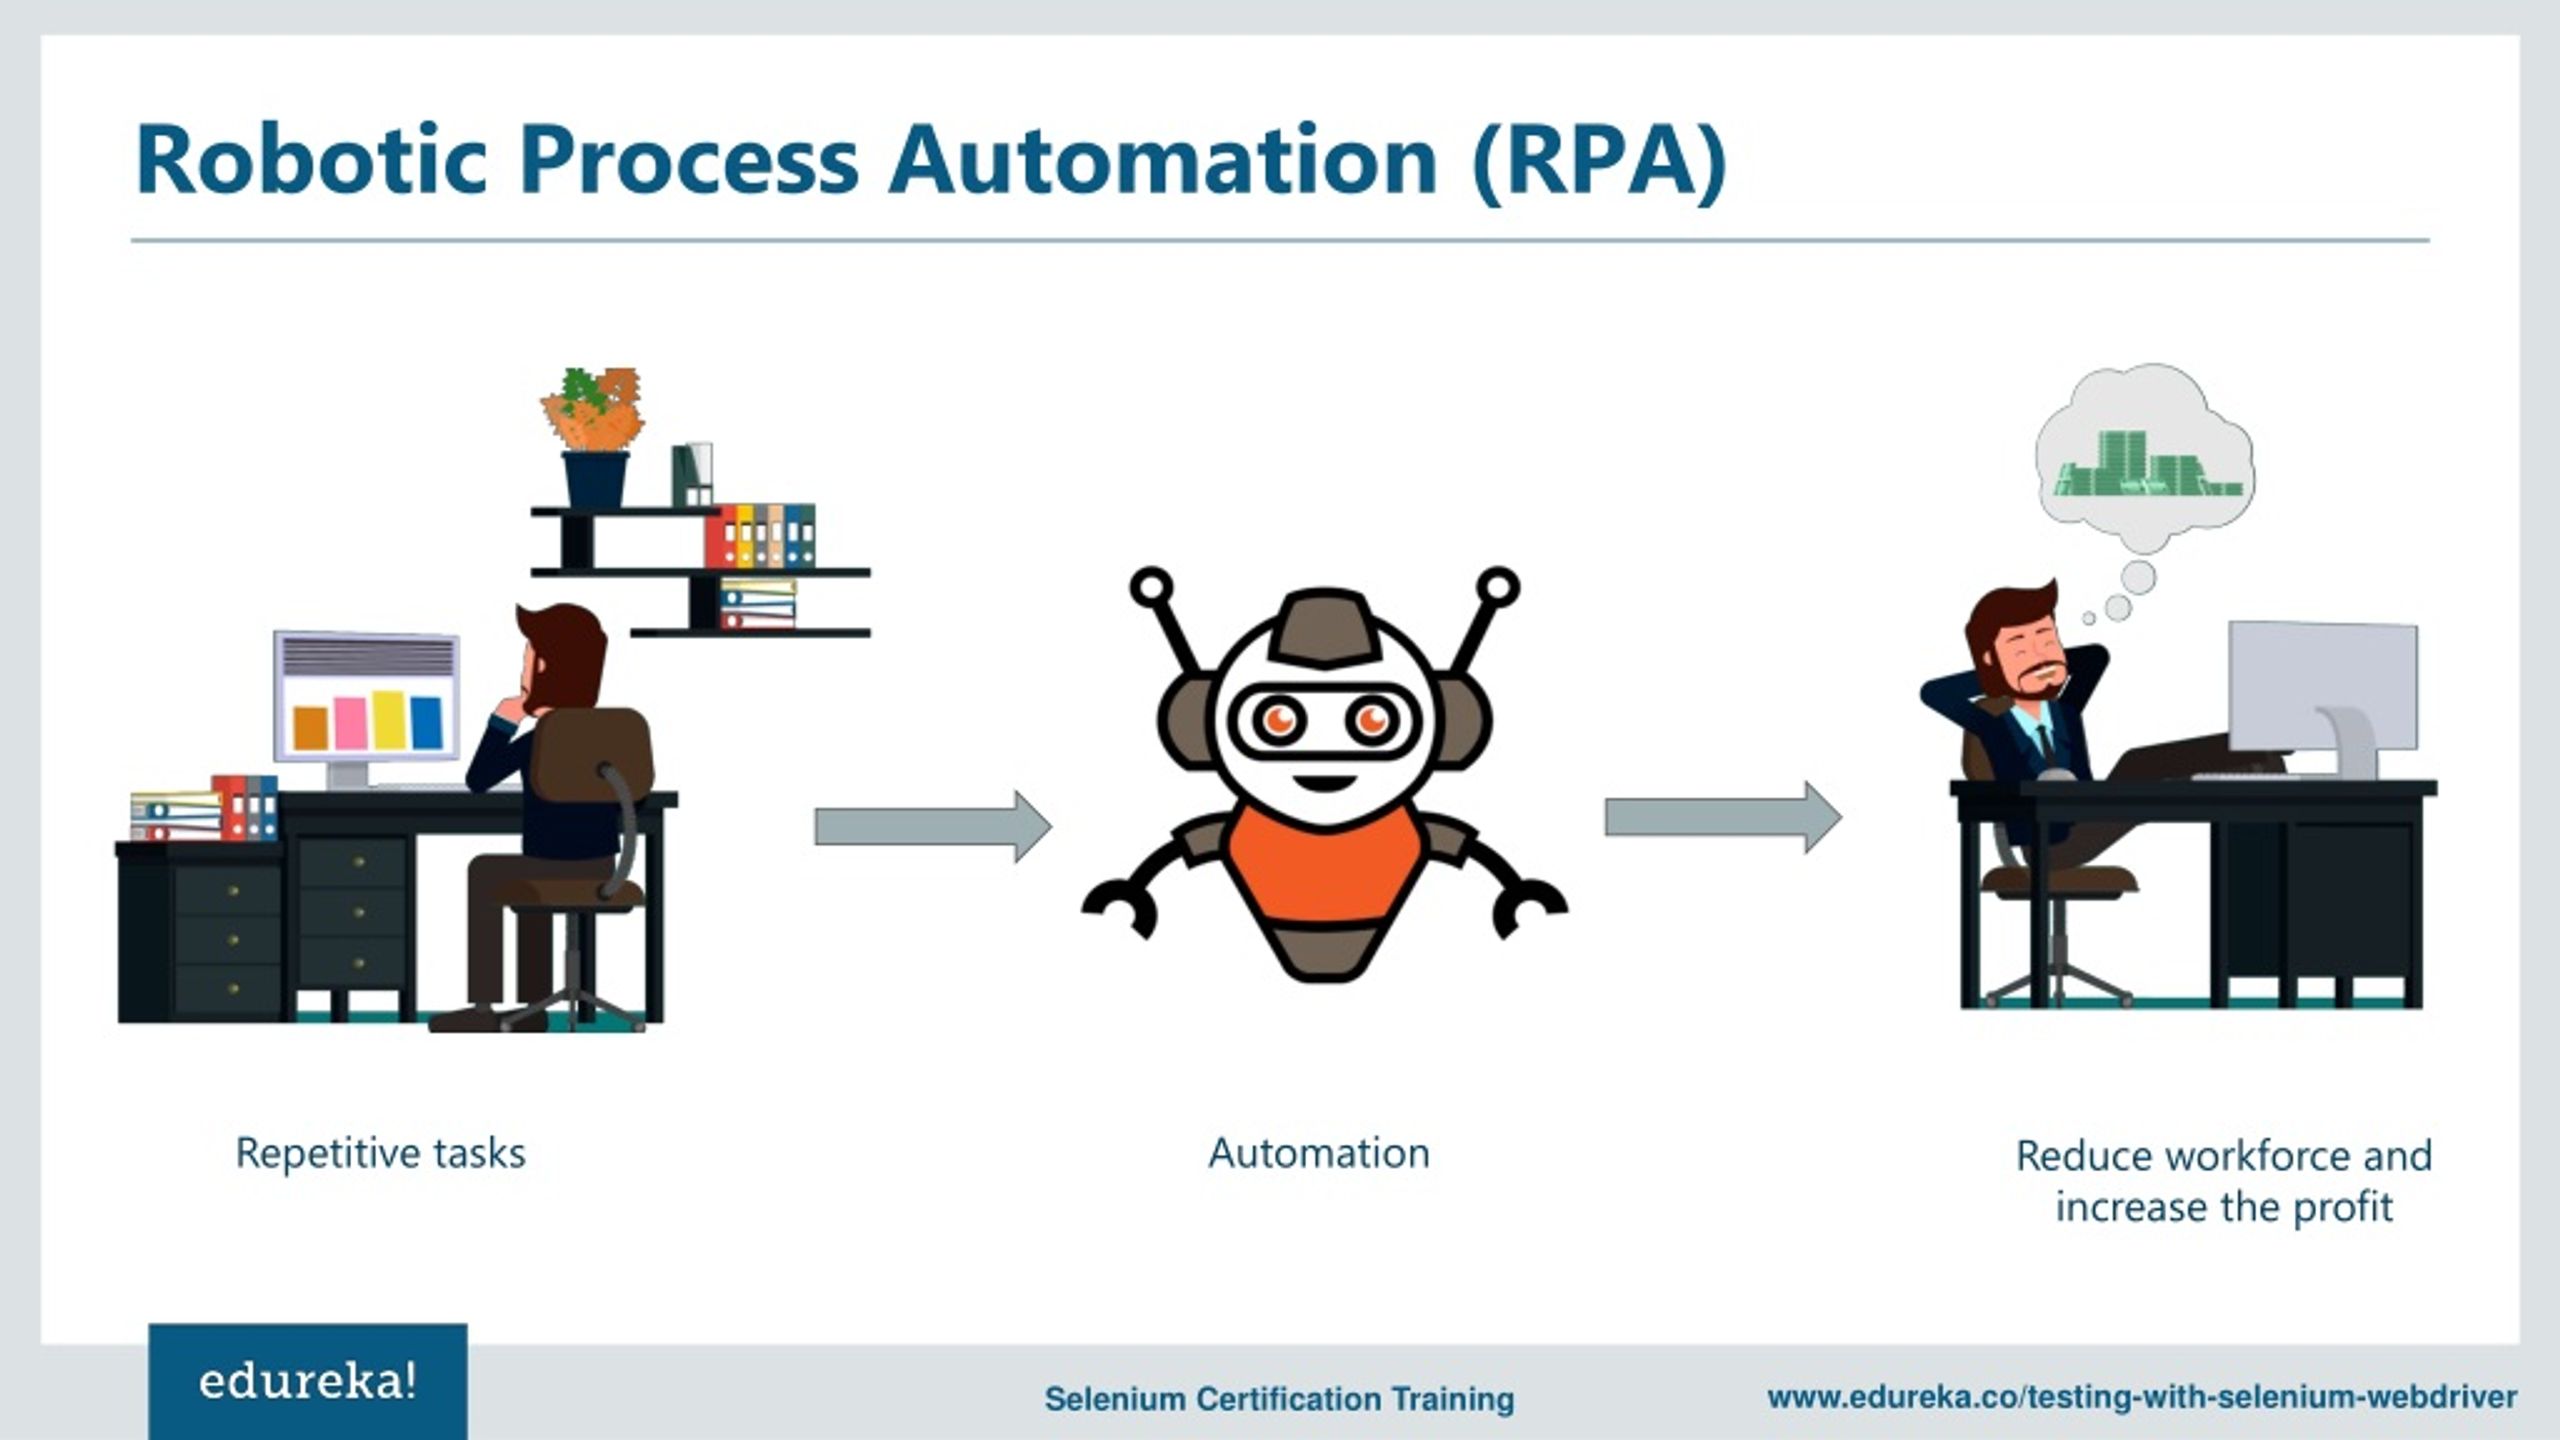 PPT - Selenium vs RPA | Test Automation vs Robotic Process Automation ...